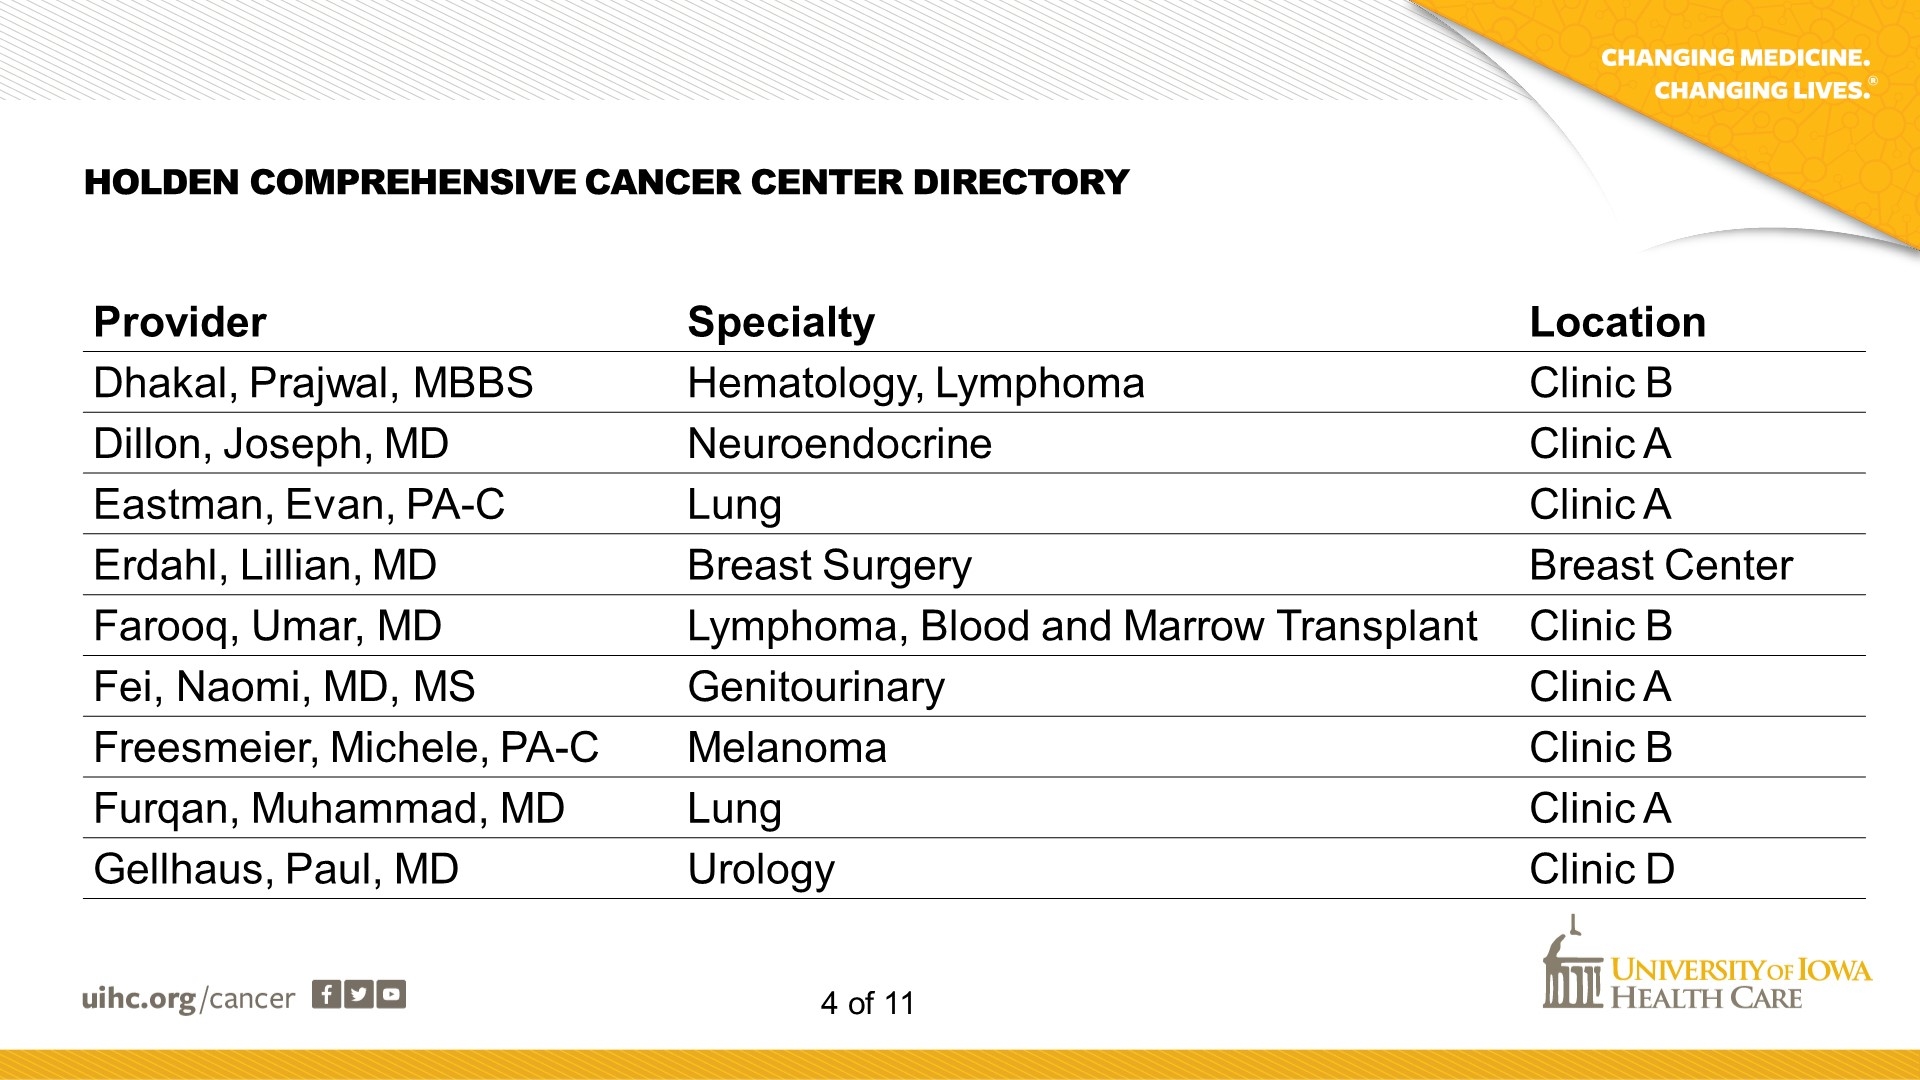 Cancer Center Directory - Slide 4